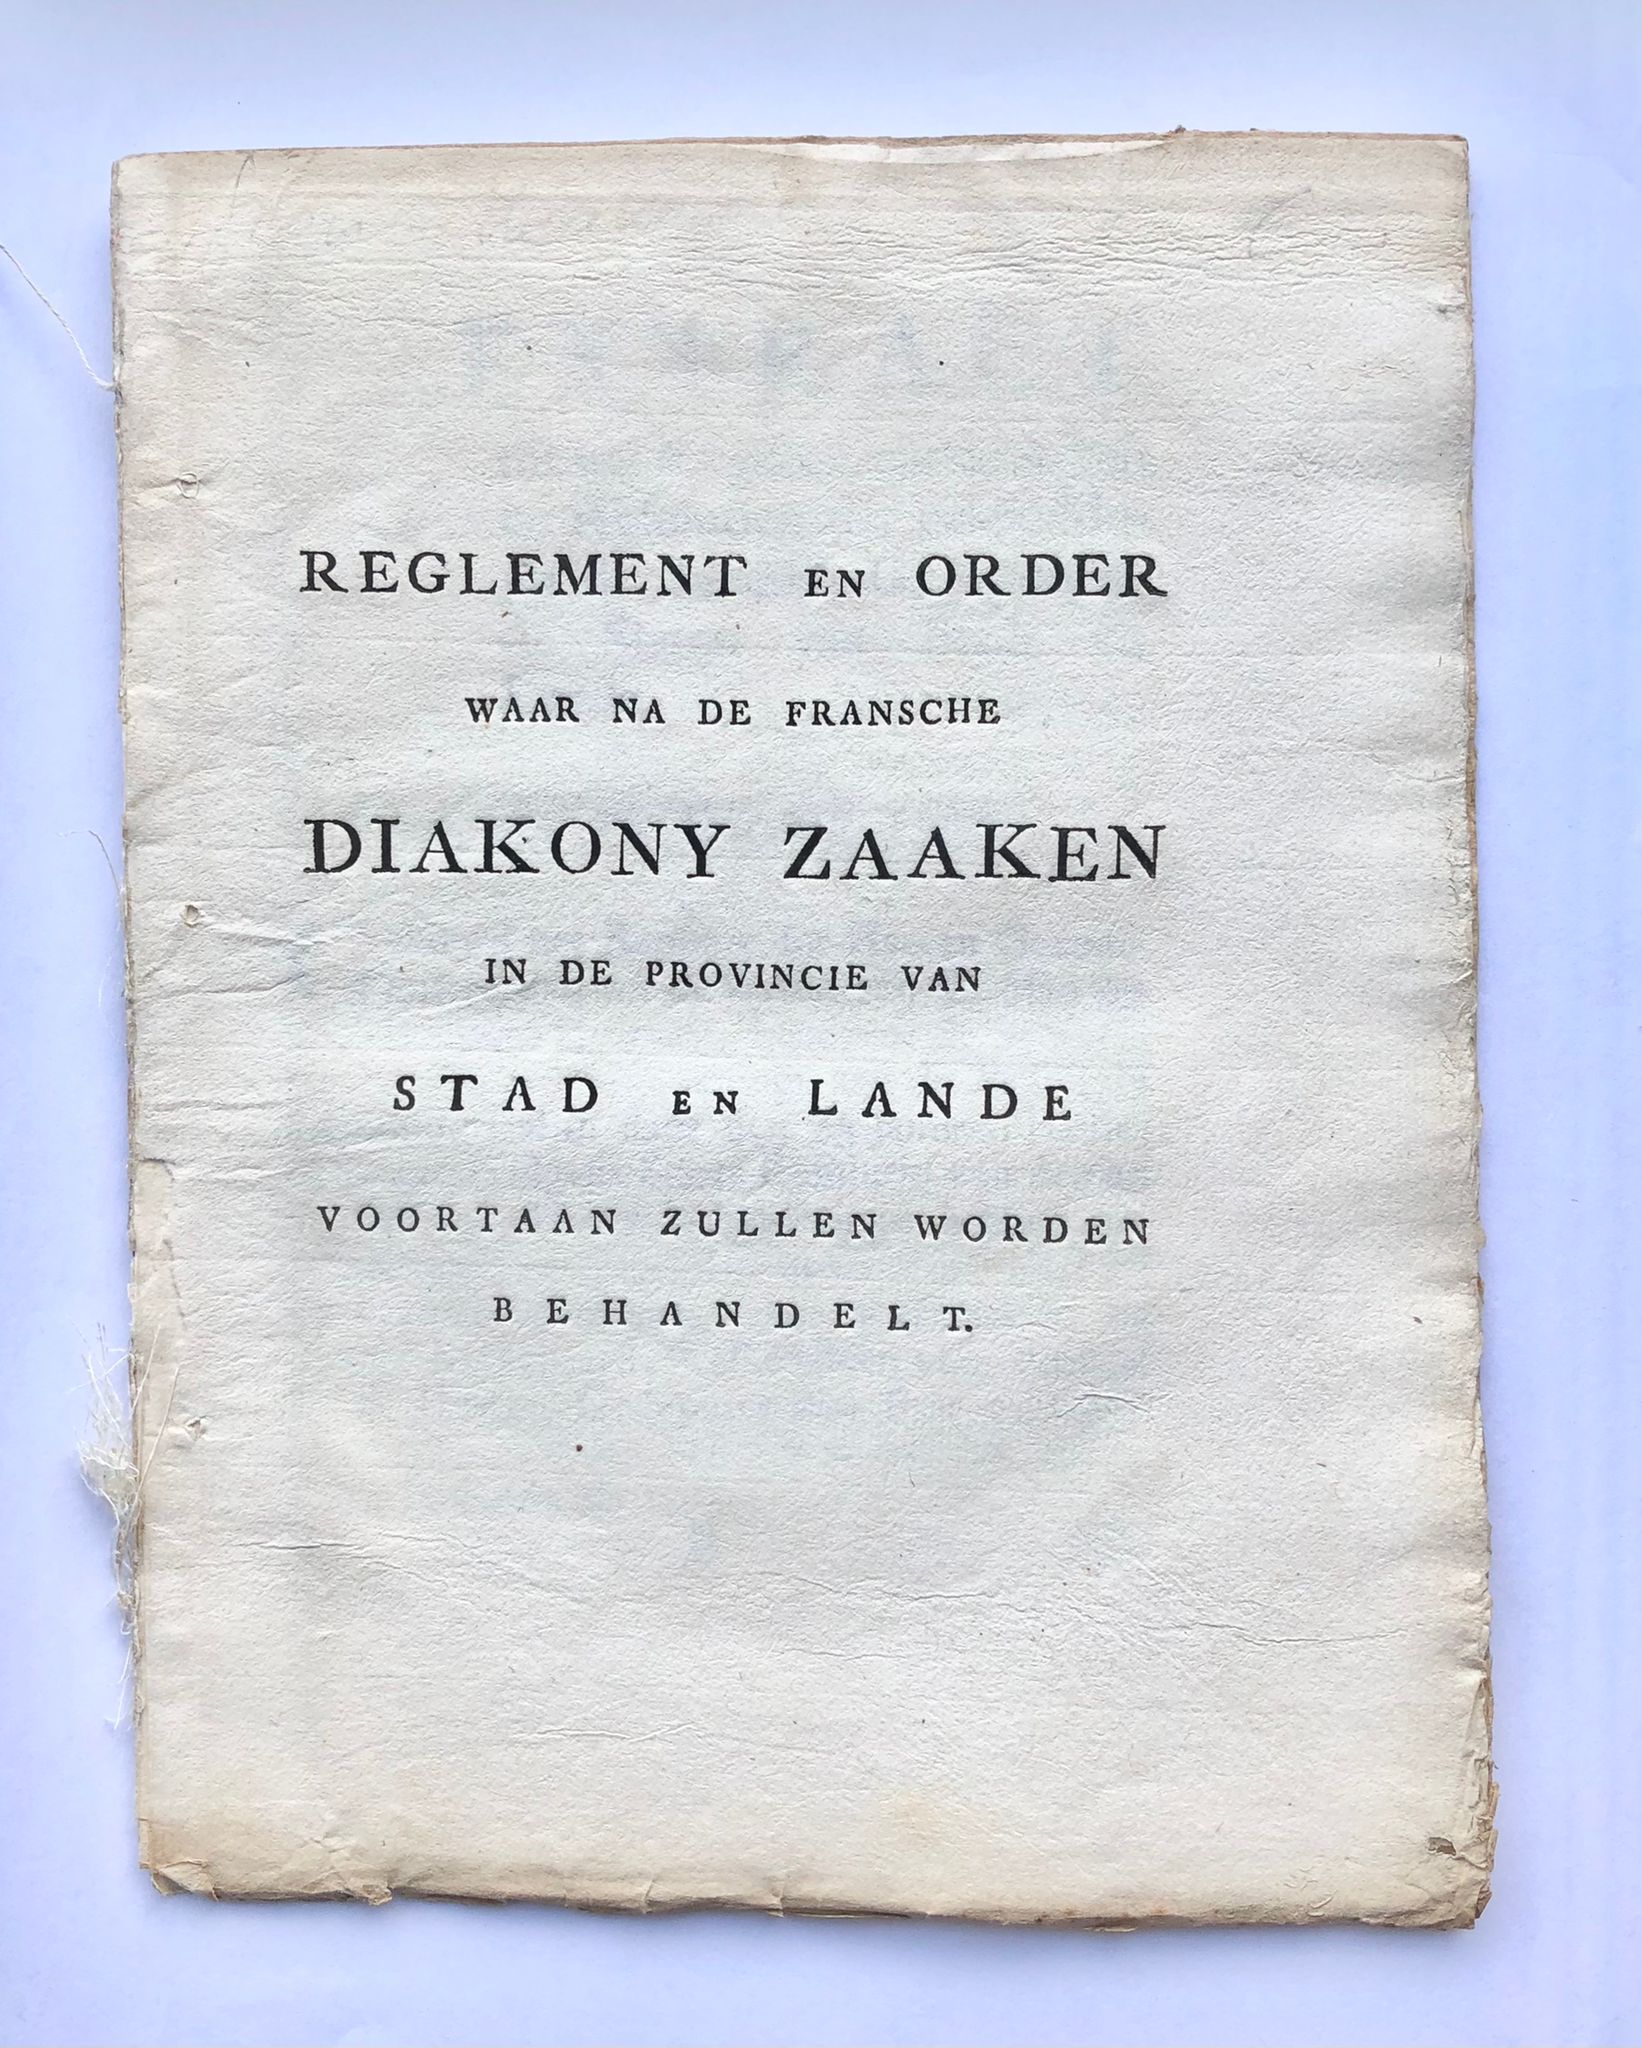 [Groningen, Diaconie, [1769]] Reglement en order waar na de Fransche Diakony Zaaken in de Provincie van Stad en Lande voortaan zullen worden behandelt, [s.l, s.n. [1769], 20 pp.